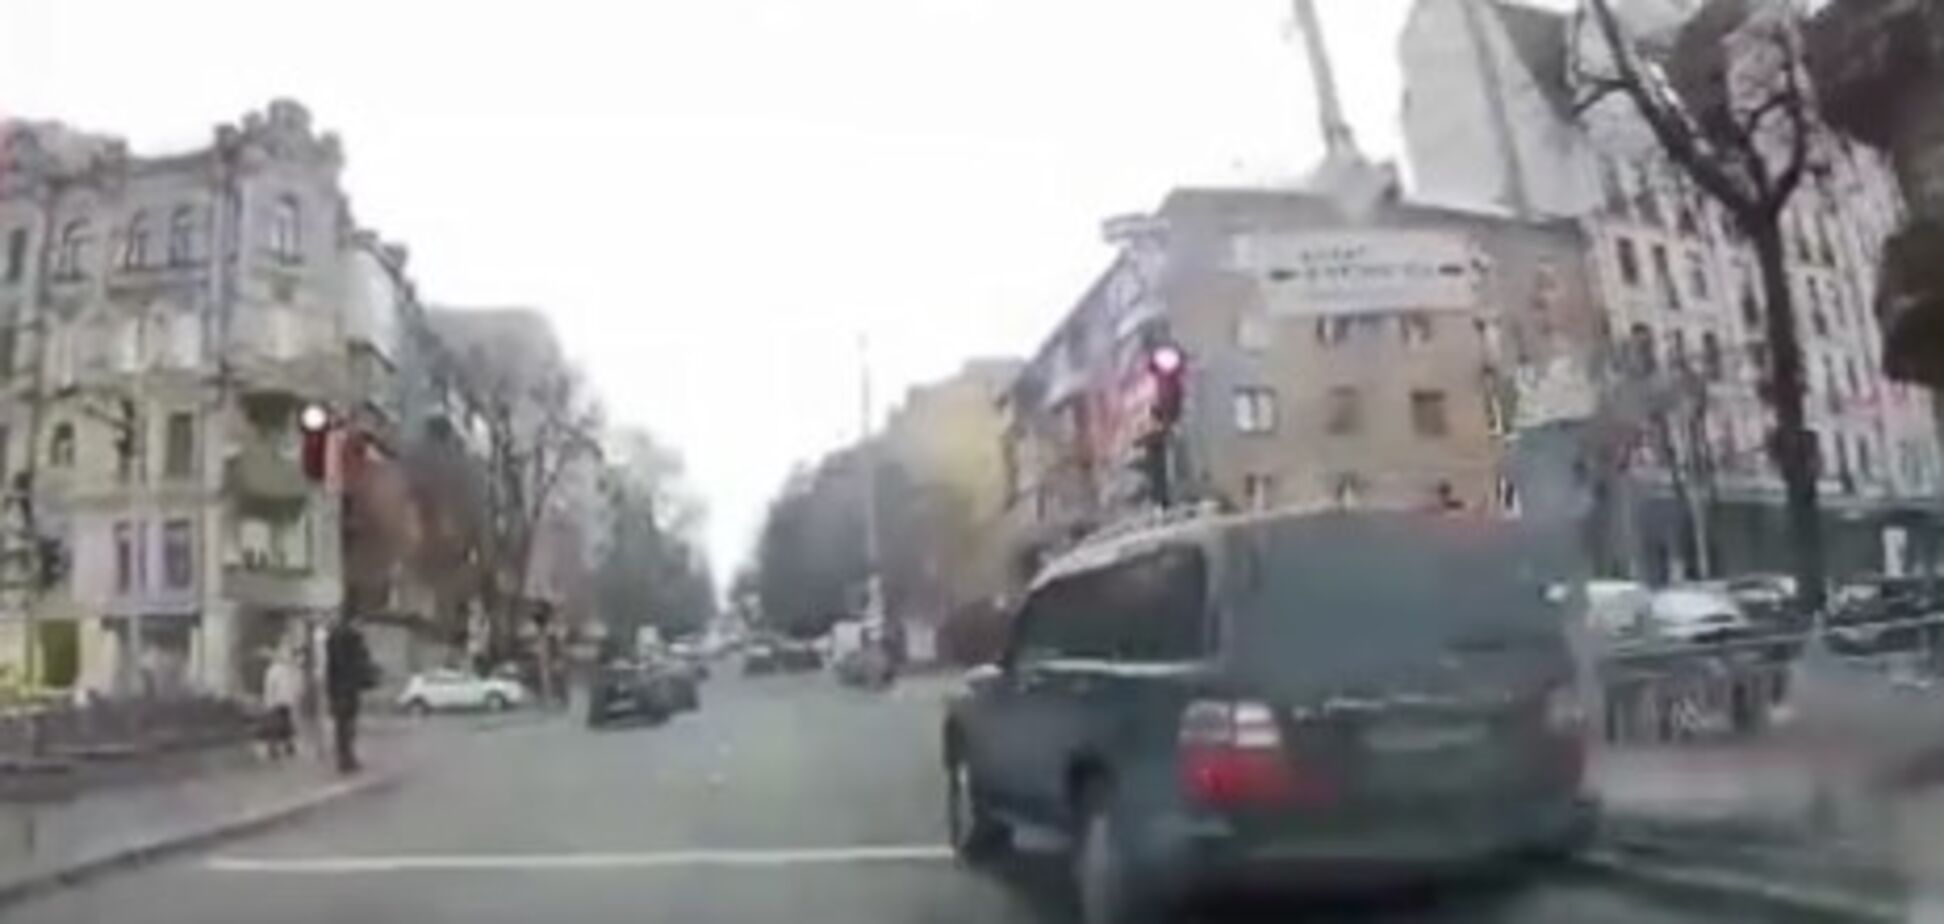 ''Синдром Зайцевой'': в Киеве на видео засекли нарушителя на элитном авто 